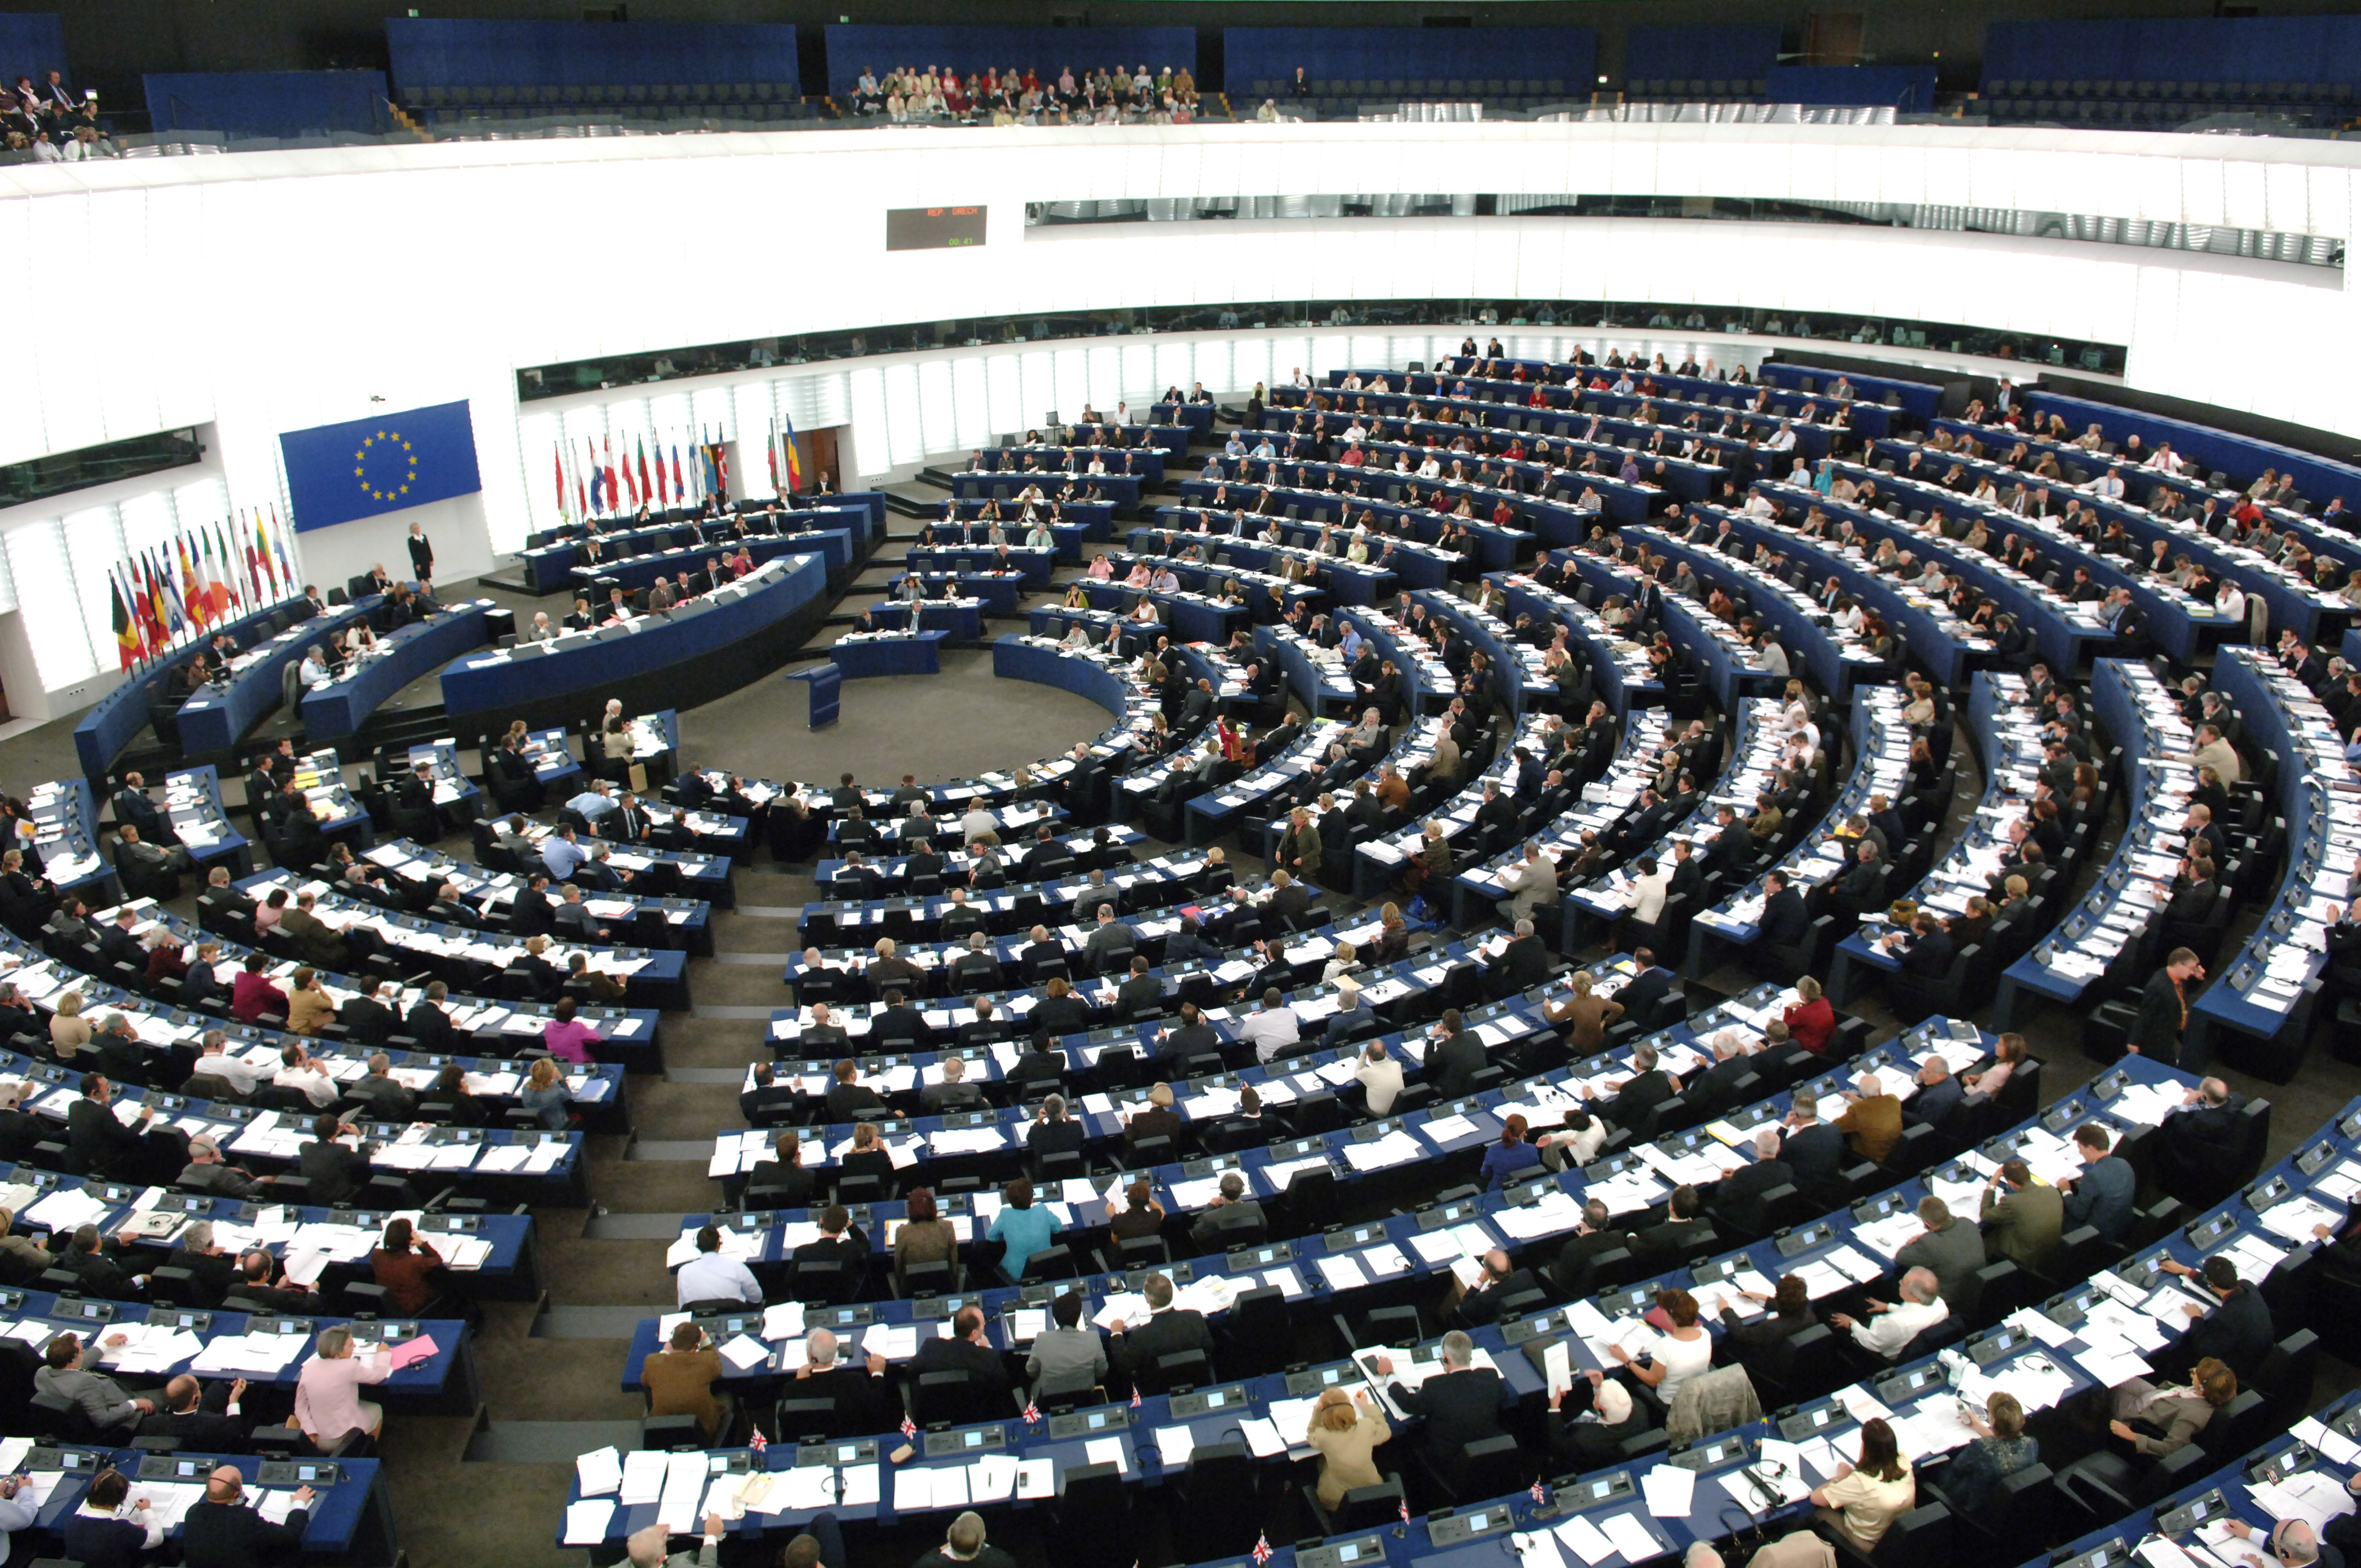  Europos parlamente posėdžiauja 785 politikai, atstovaujantys 27 šalims ir 177 partijoms 